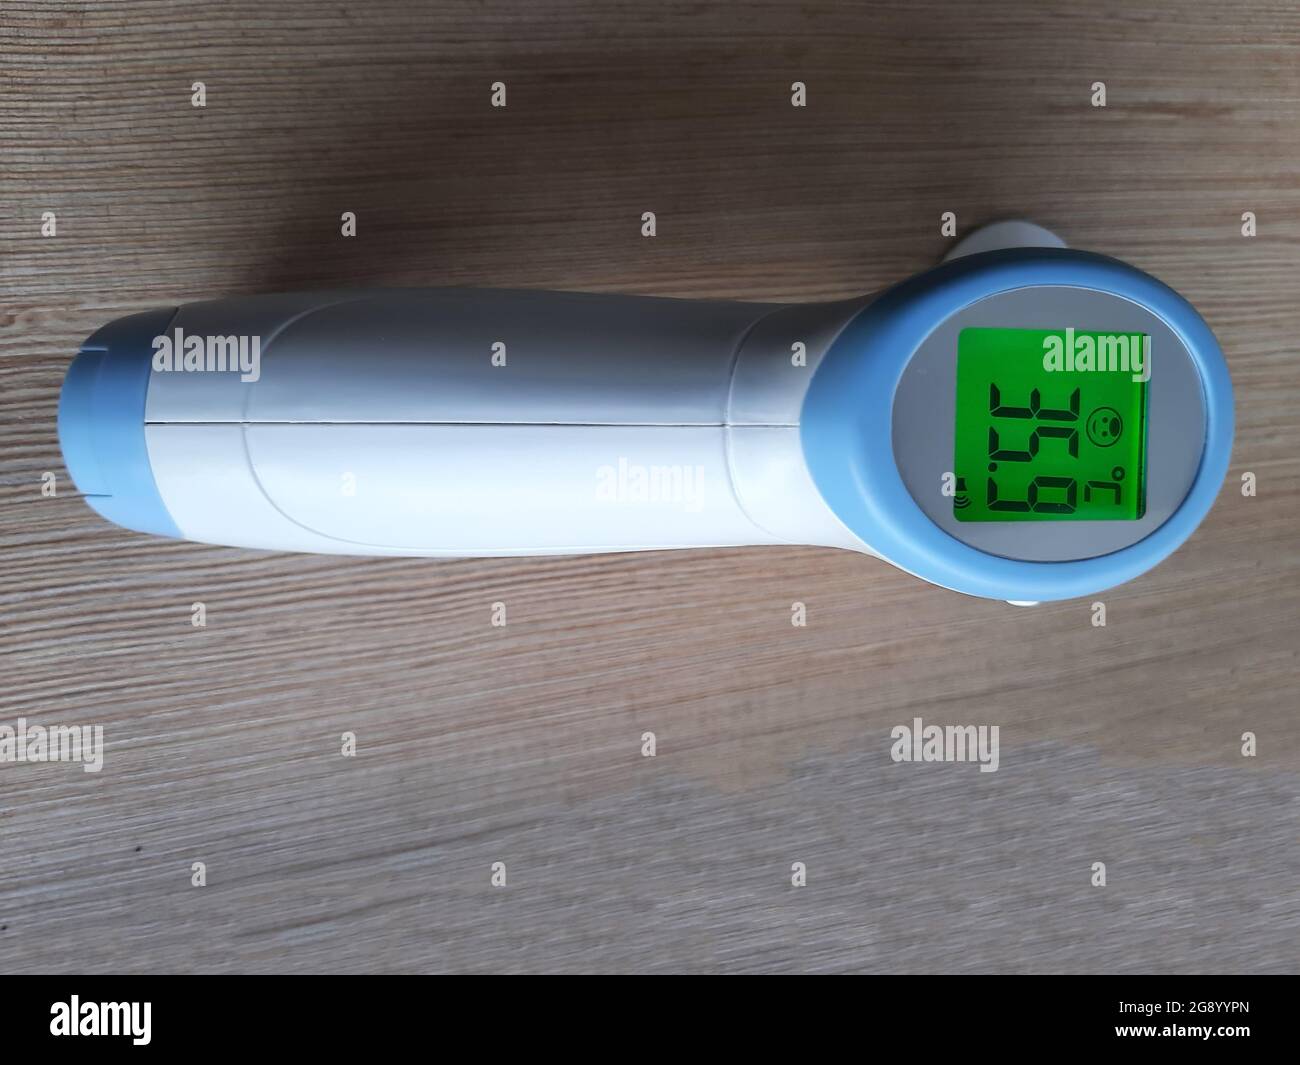 Indicatore termometro. Strumento di misurazione della temperatura corporea. Apparecchiature mediche. Foto Stock